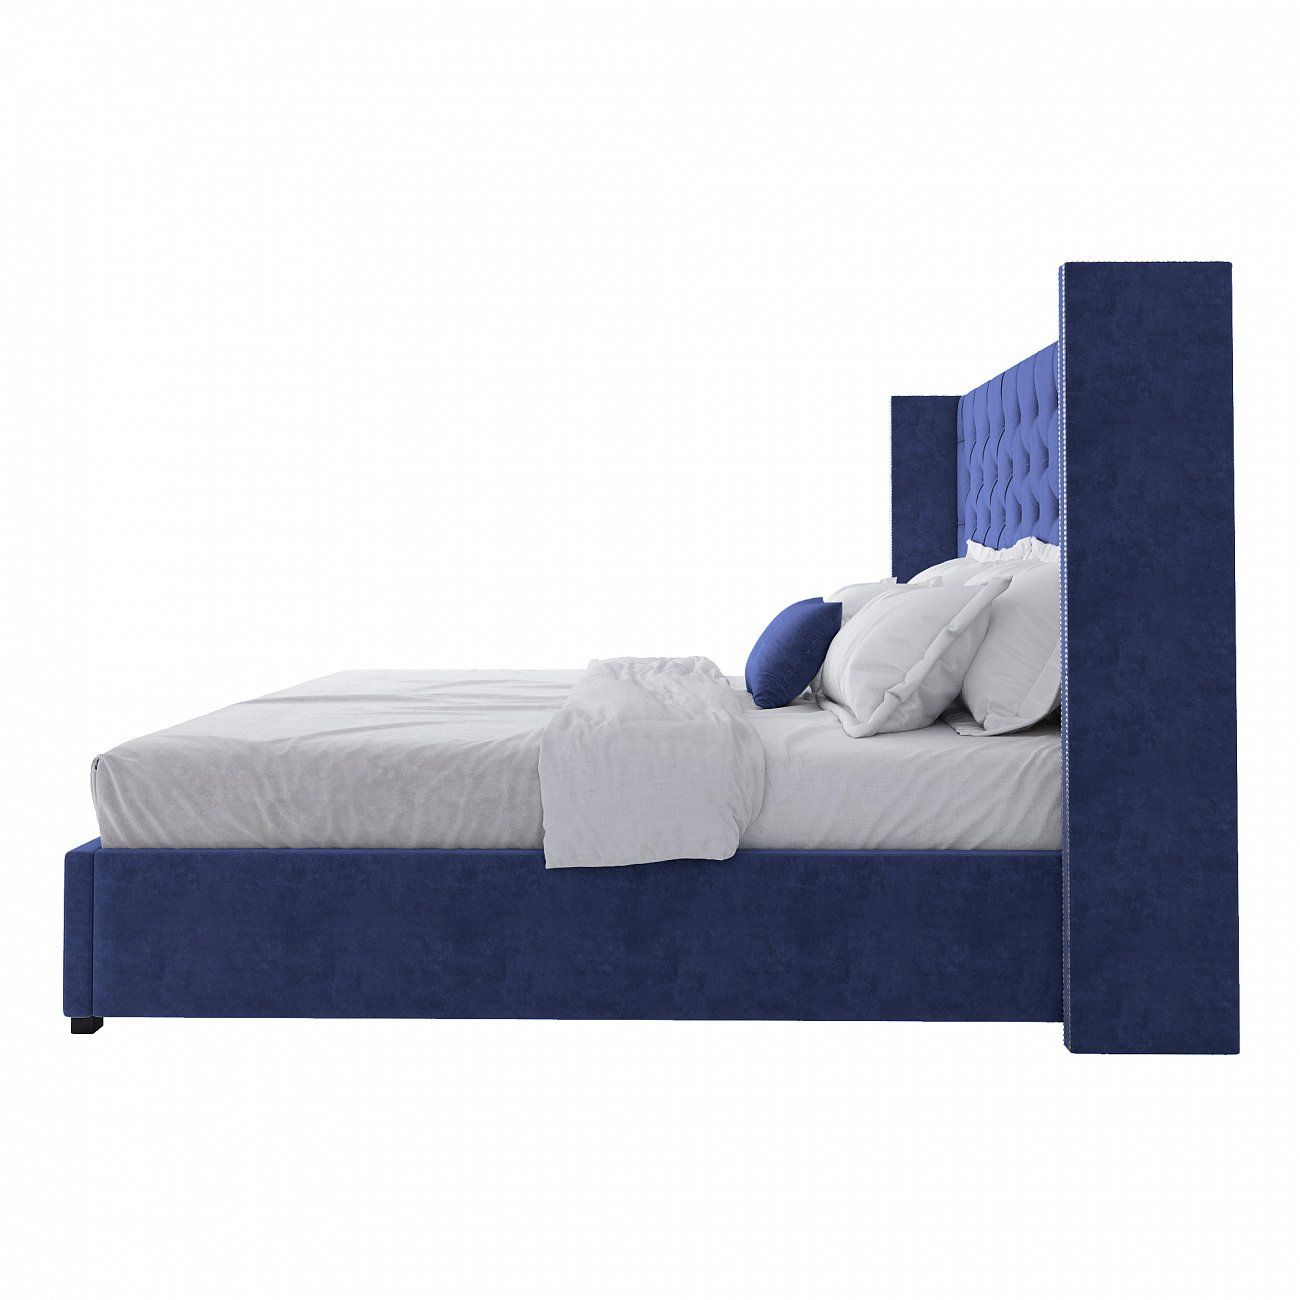 Кровать двуспальная 200х200 см синяя с гвоздиками и каретной стяжкой Wing